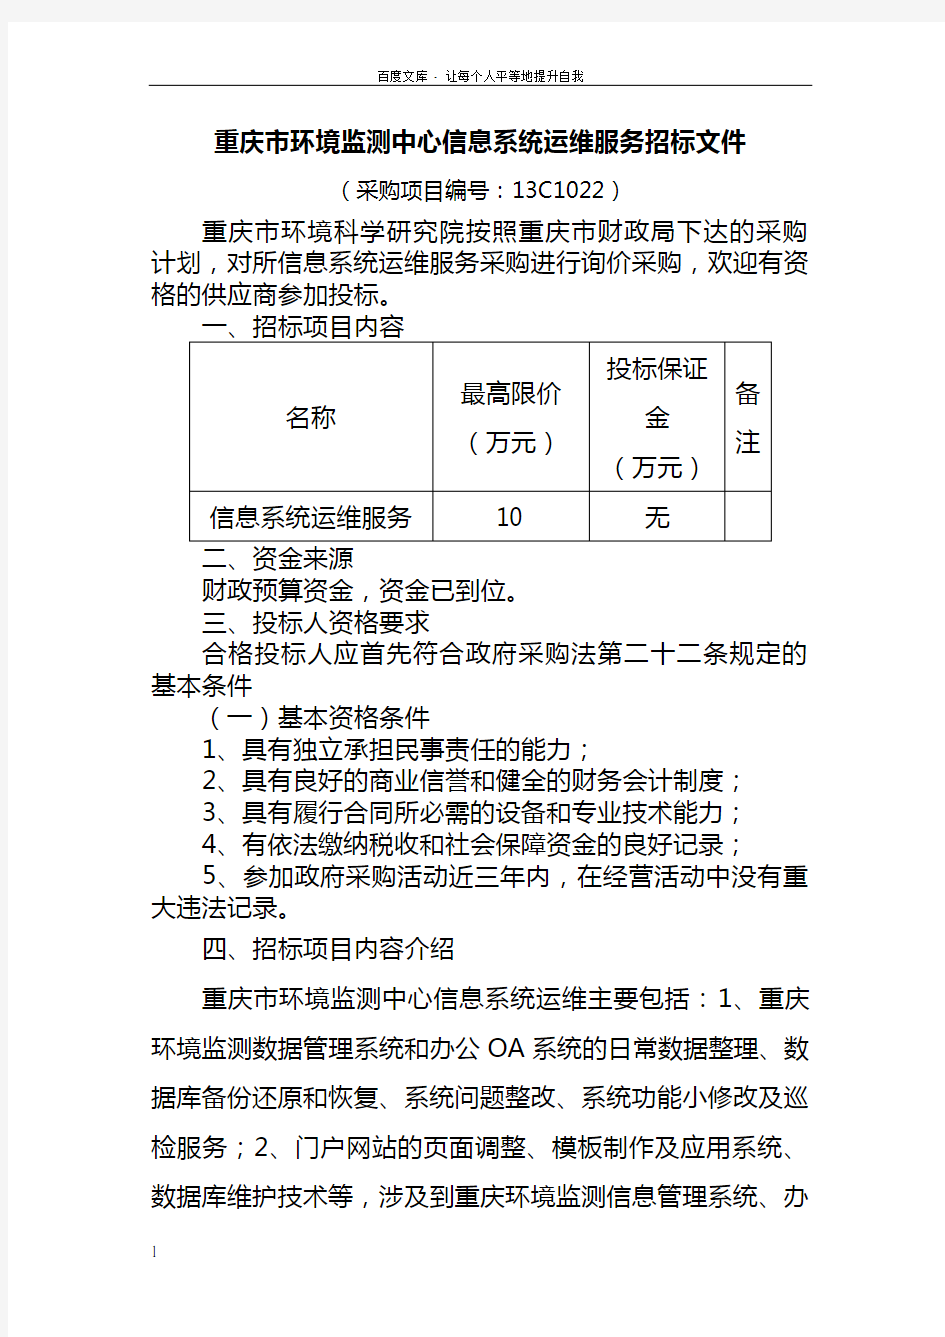 重庆市环境监测中心信息系统运维服务招标文件